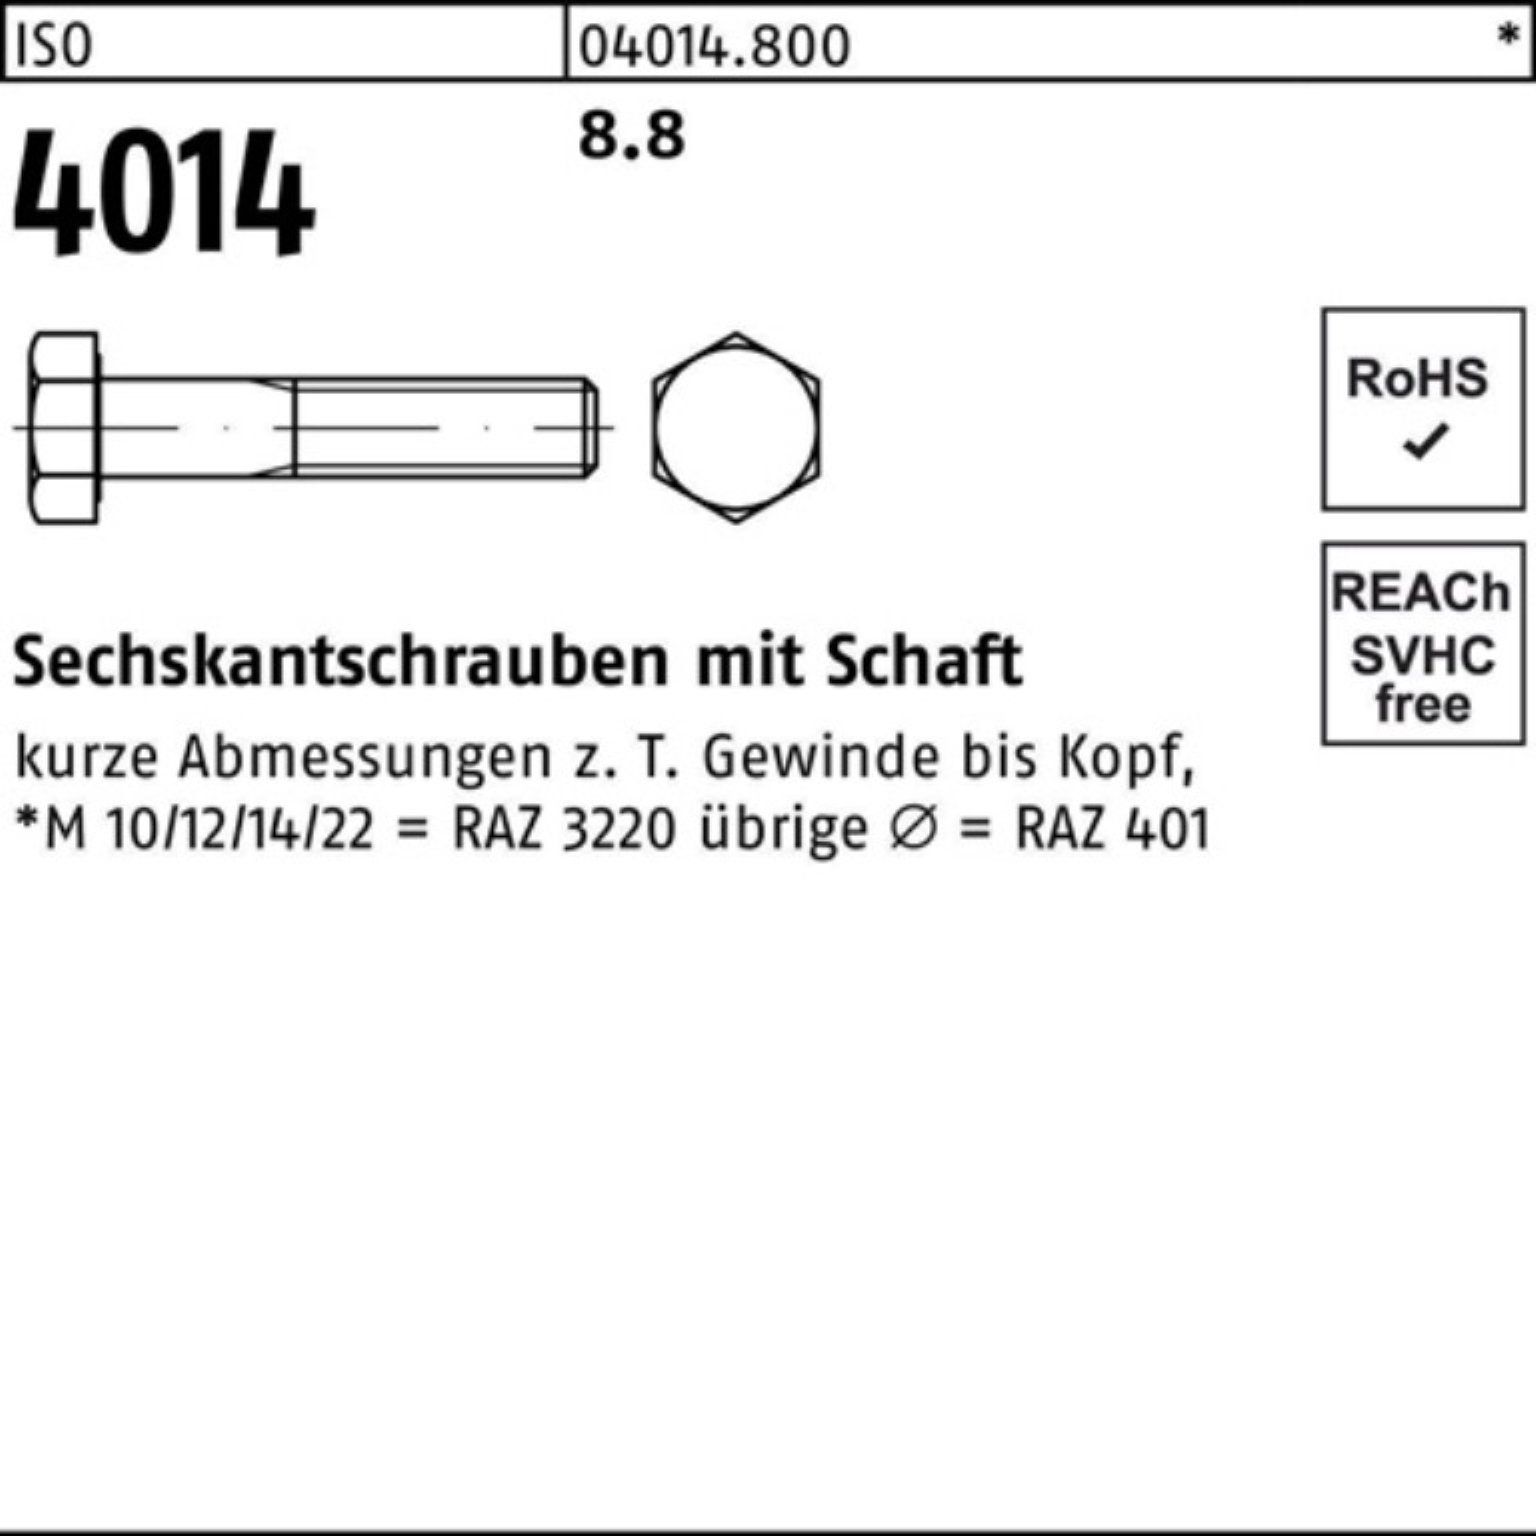 4014 Sechskantschraube 8.8 Bufab 100er ISO 250 Schaft M10x Stück 50 IS Sechskantschraube Pack